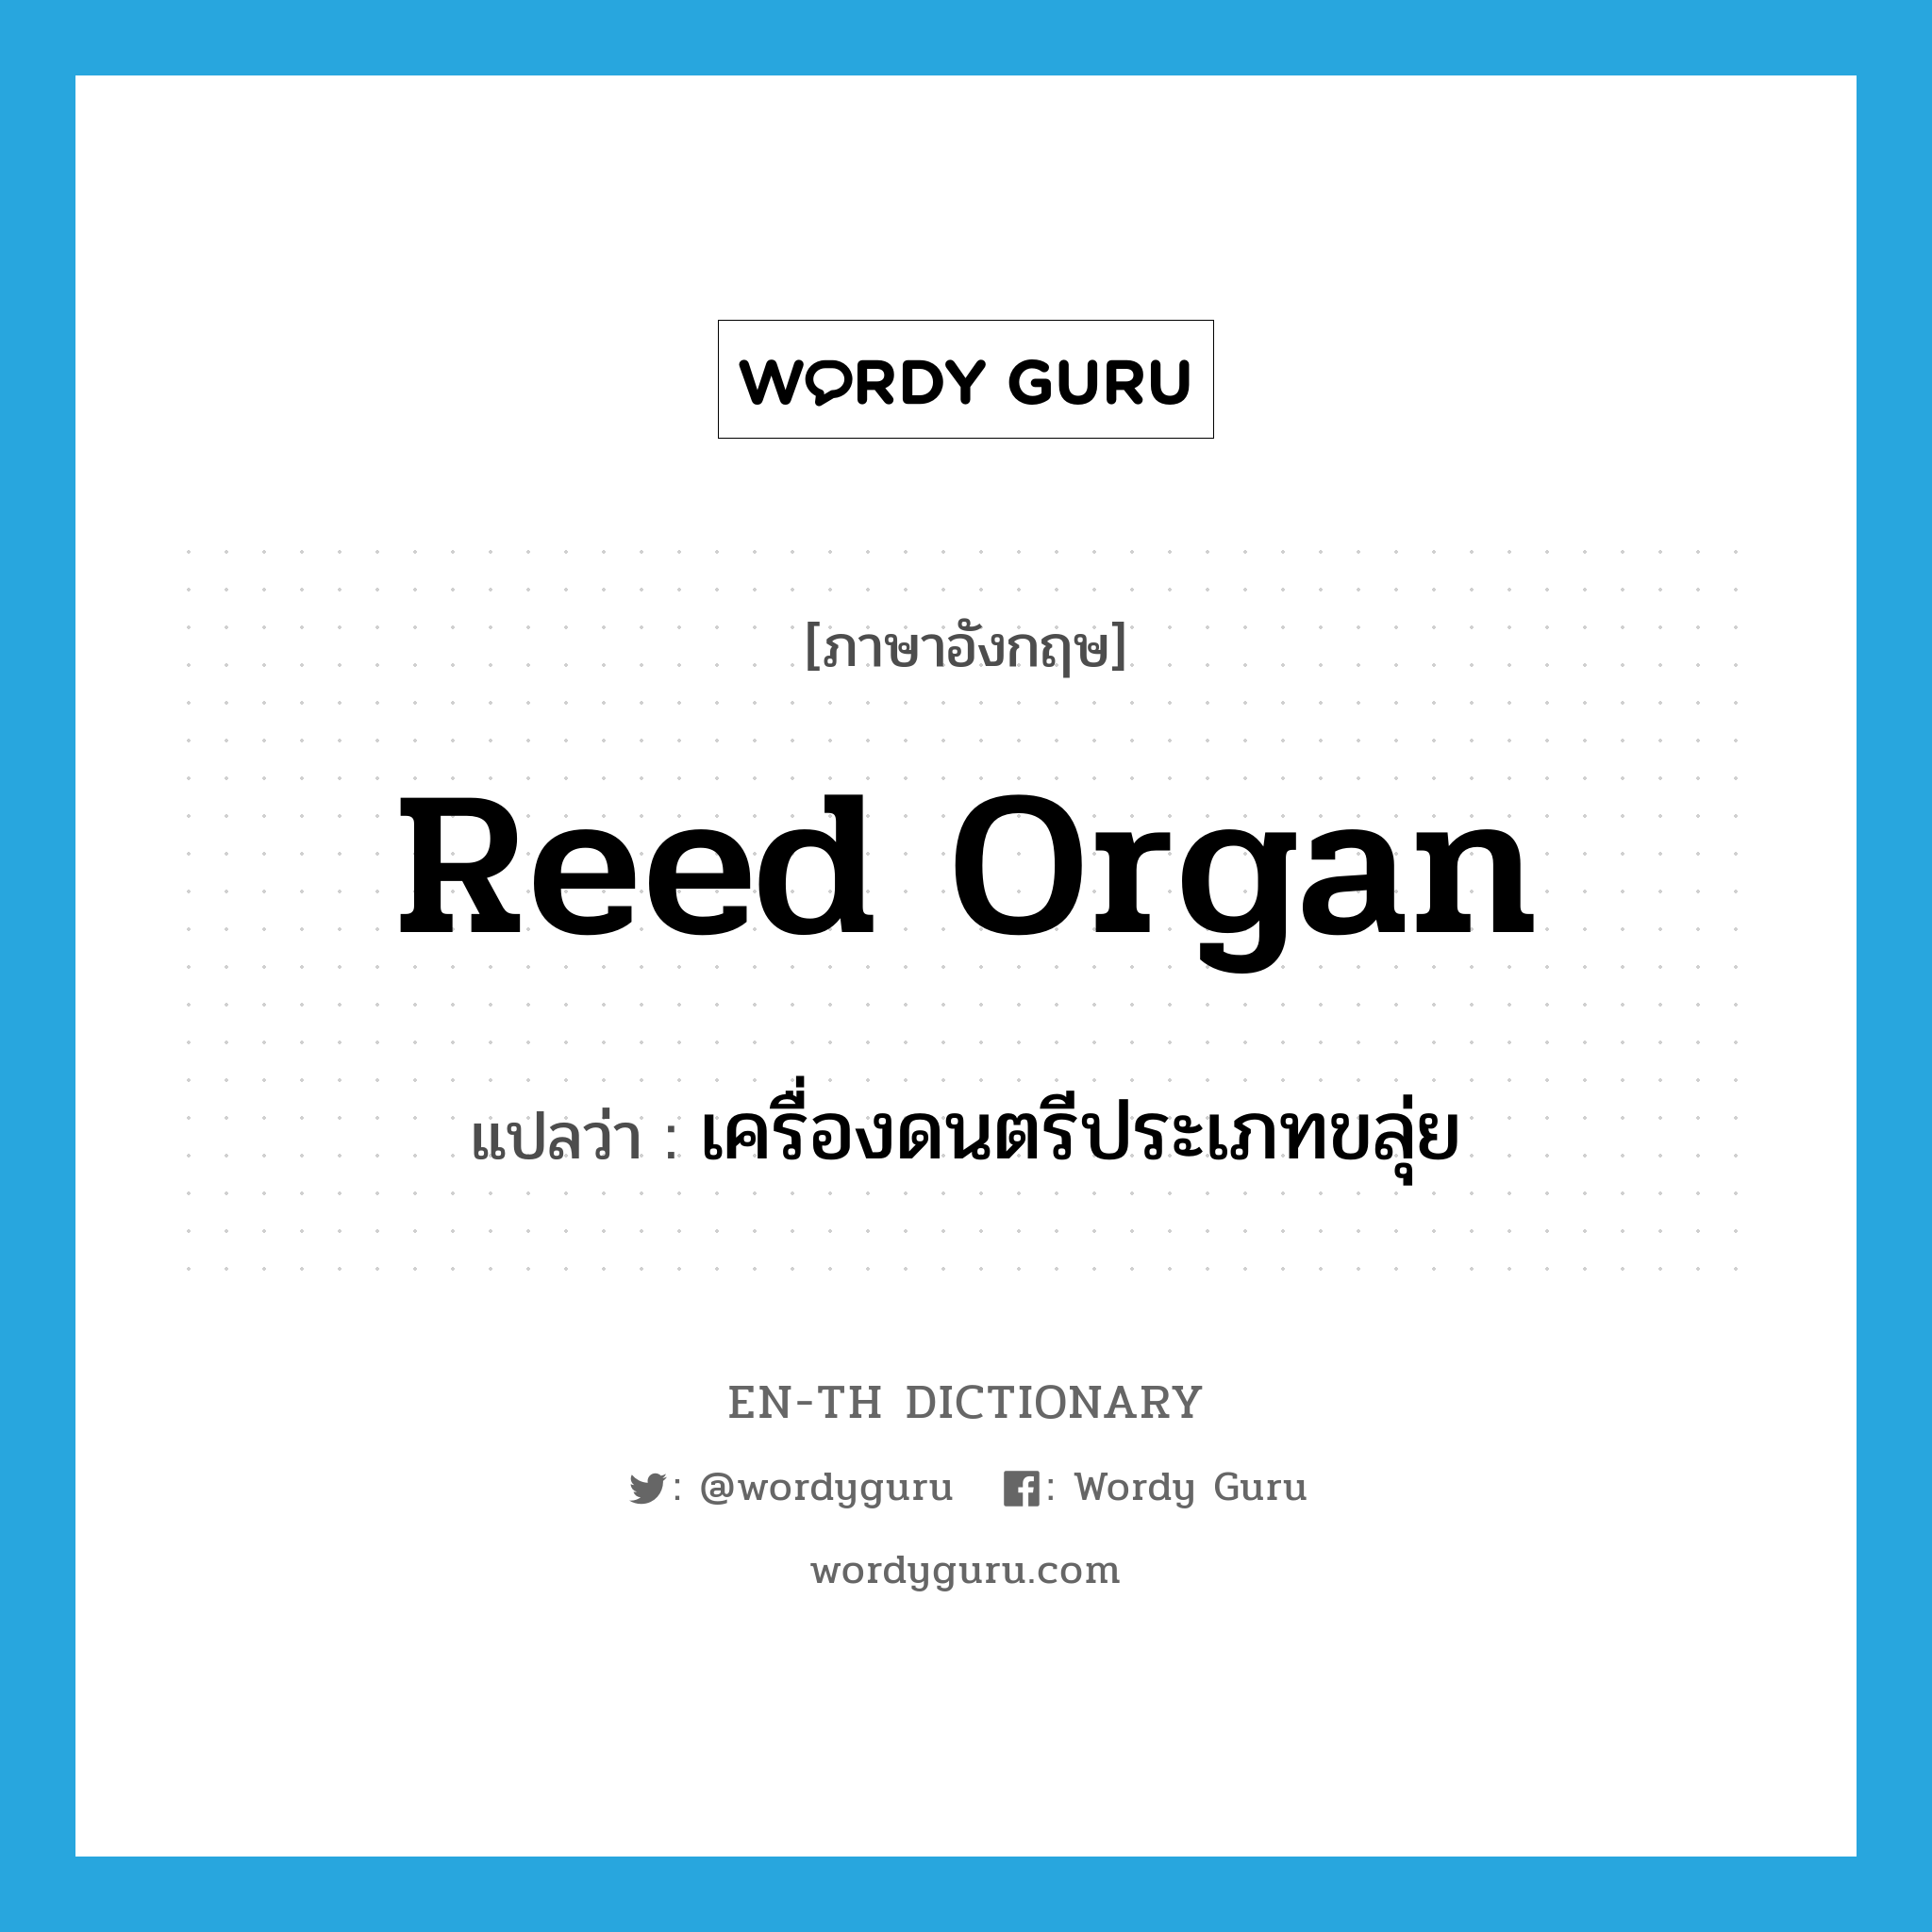 reed organ แปลว่า?, คำศัพท์ภาษาอังกฤษ reed organ แปลว่า เครื่องดนตรีประเภทขลุ่ย ประเภท N หมวด N